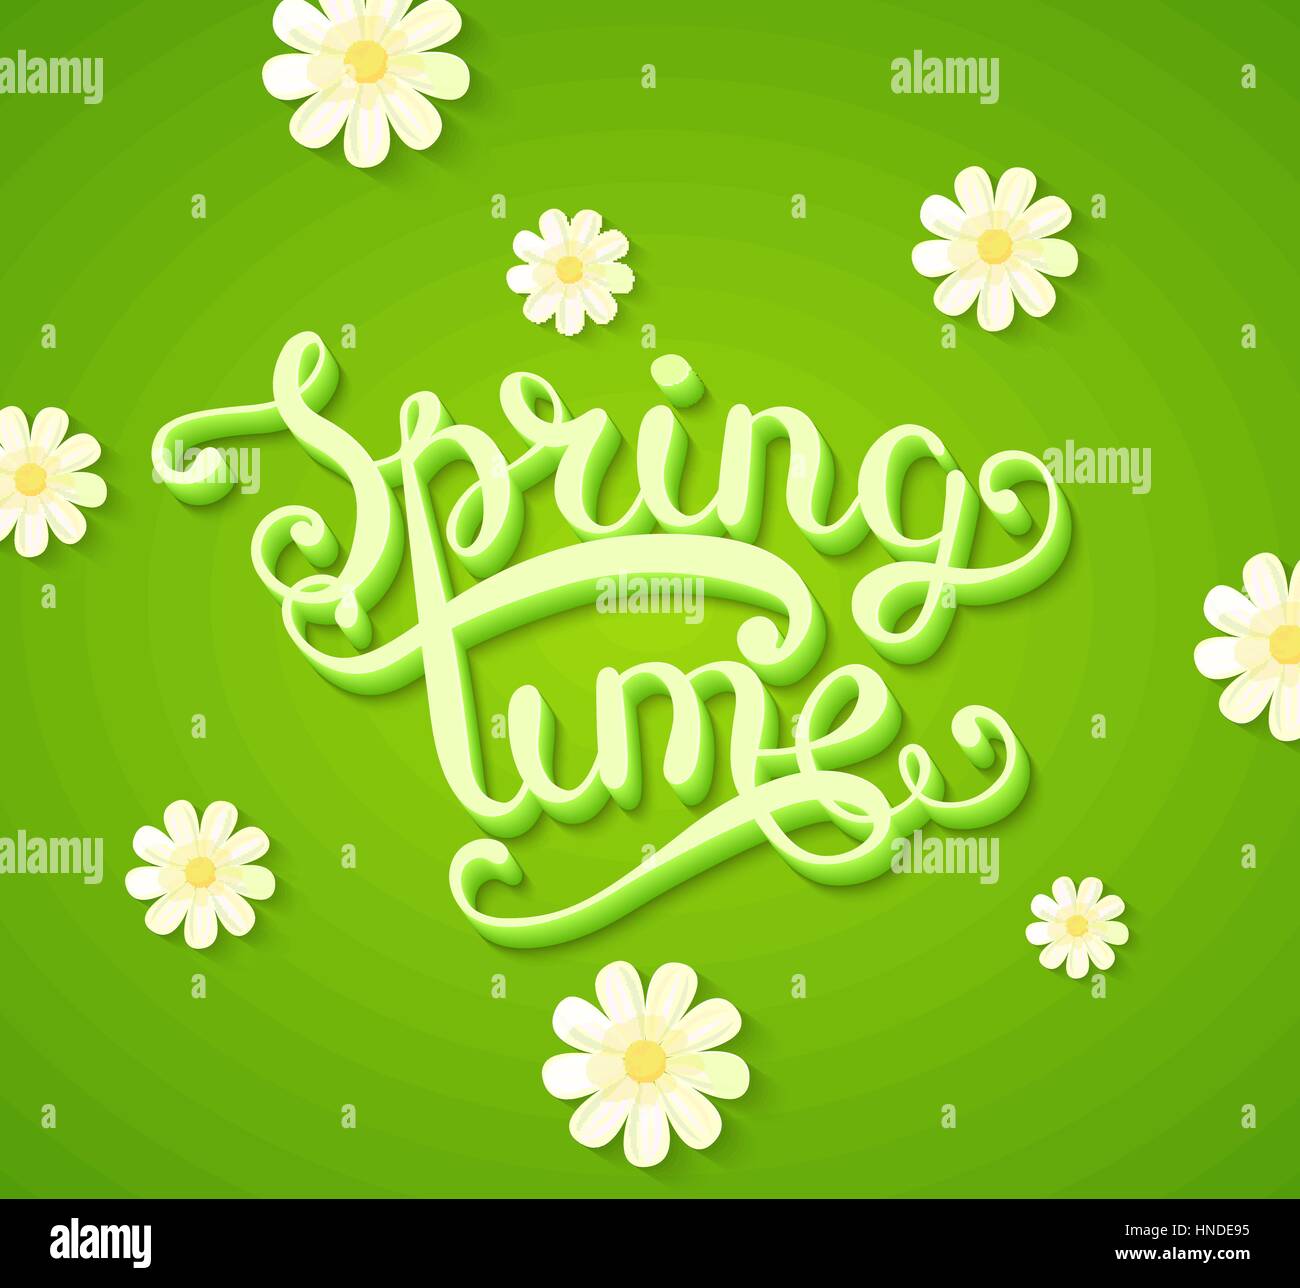 Il tempo primaverile tipografia titolo concetto in 3D con lunga ombra decorate con fiori su sfondo verde. Realistico illustrazione vettoriale Illustrazione Vettoriale